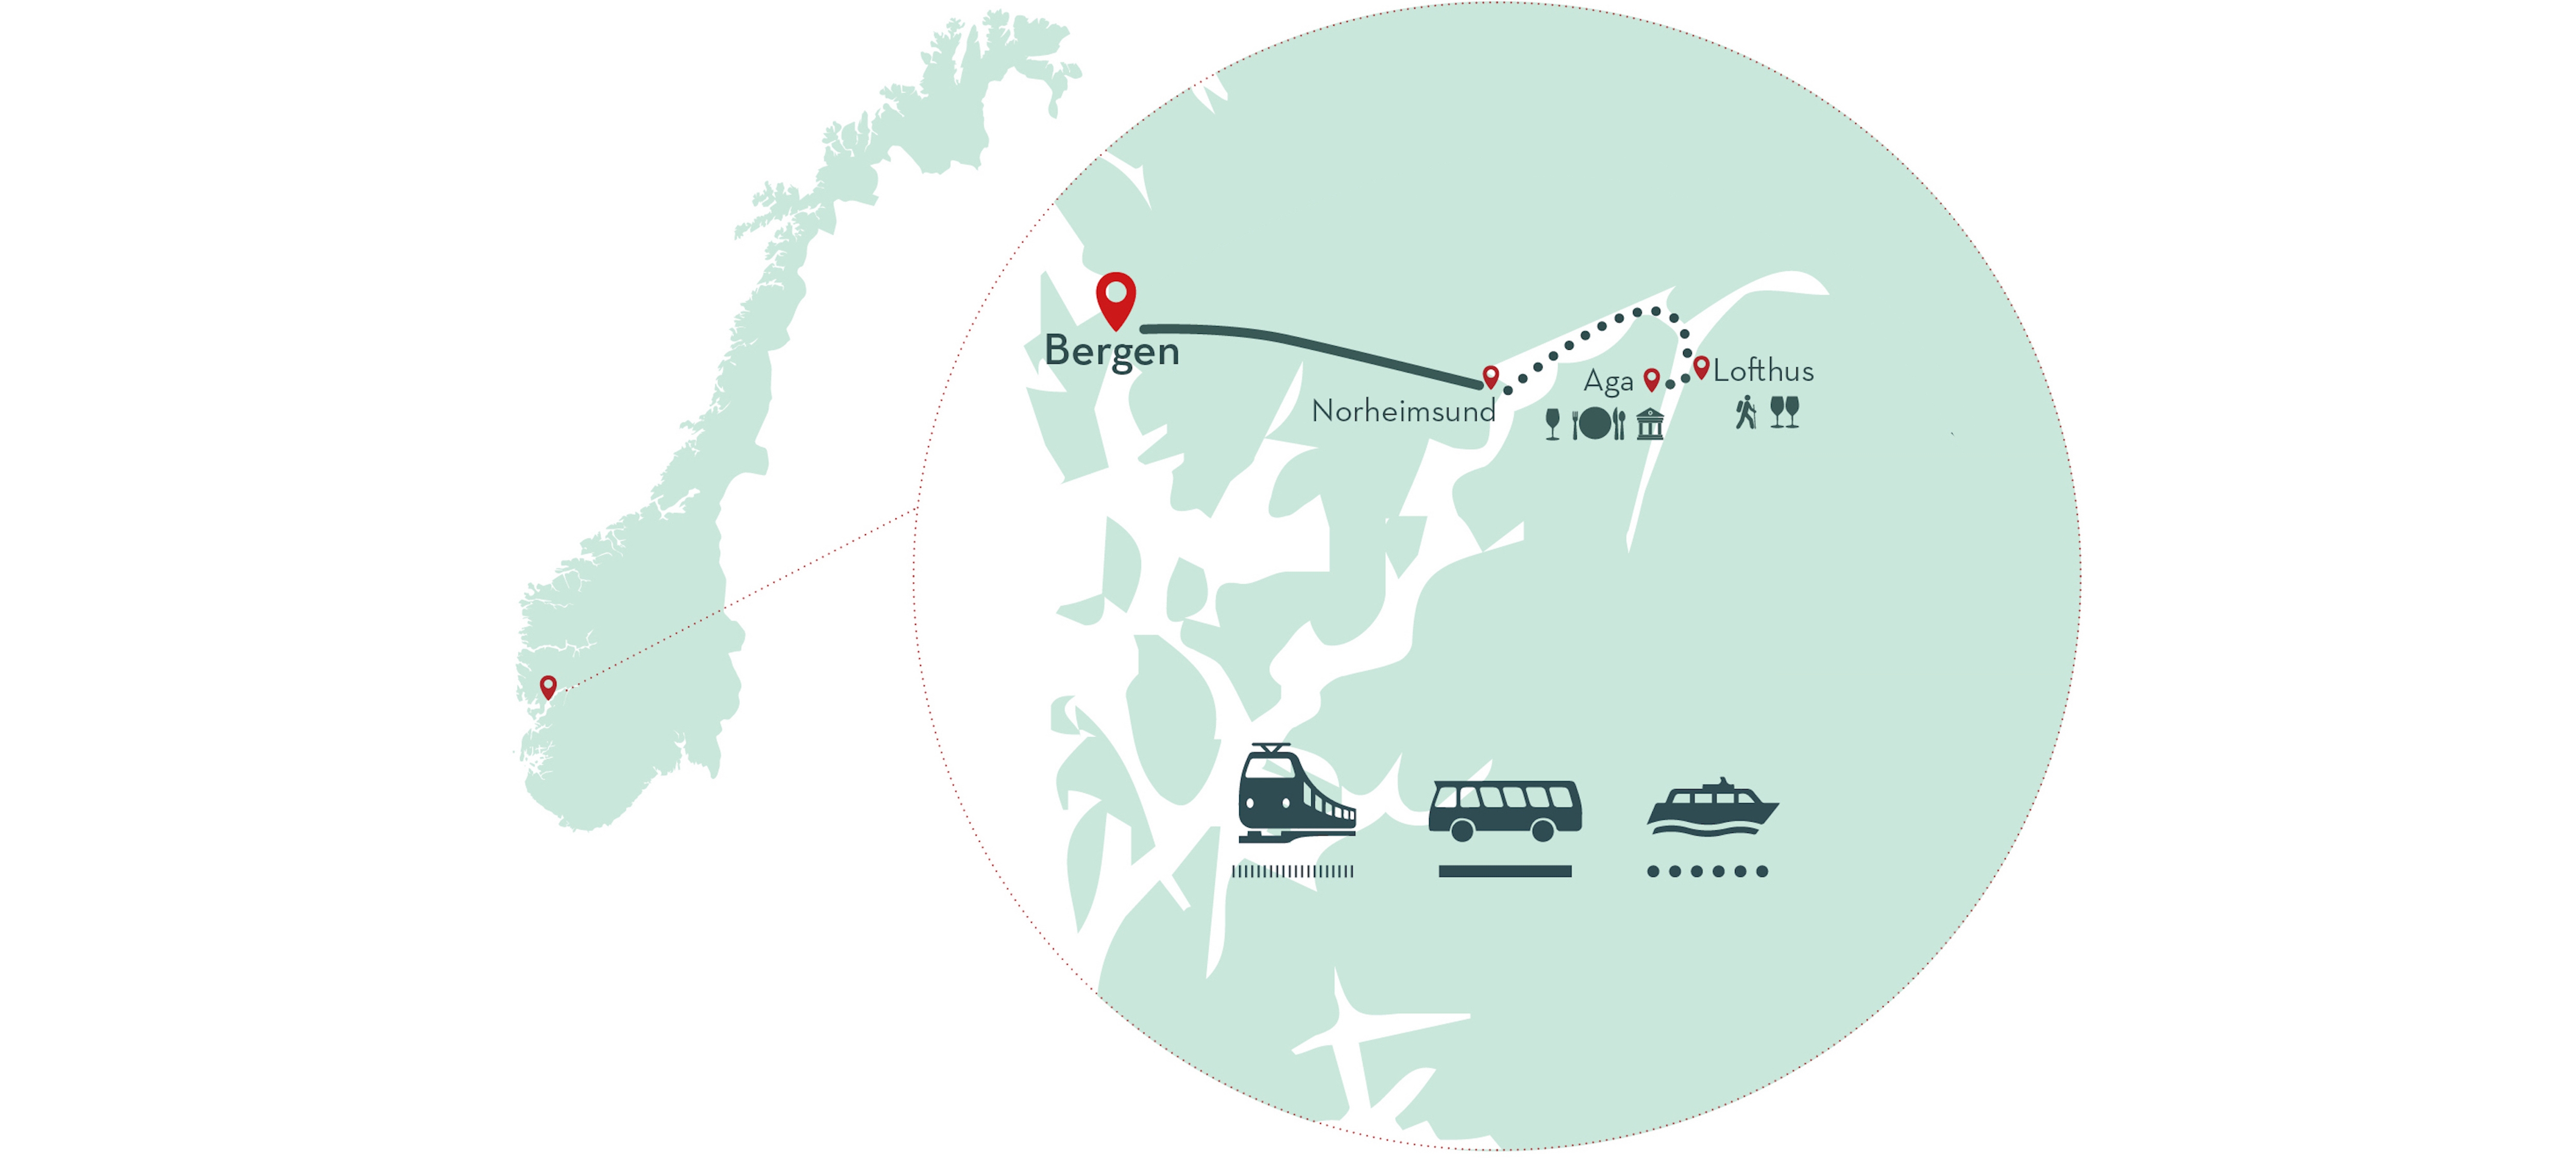 Cider-Reise von Bergen zum Hardangerfjord